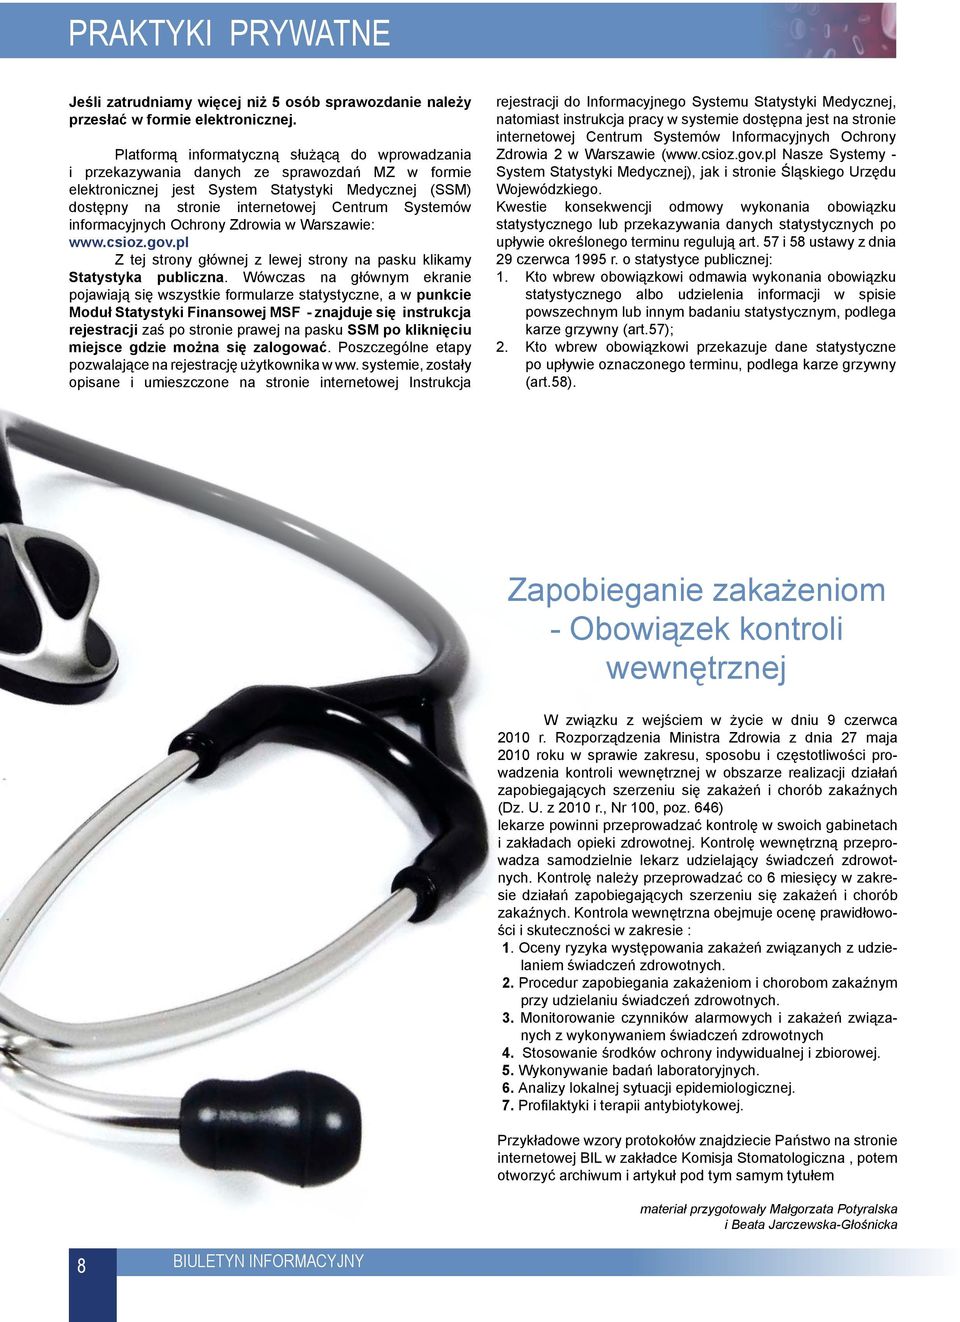 Systemów informacyjnych Ochrony Zdrowia w Warszawie: www.csioz.gov.pl Z tej strony głównej z lewej strony na pasku klikamy Statystyka publiczna.